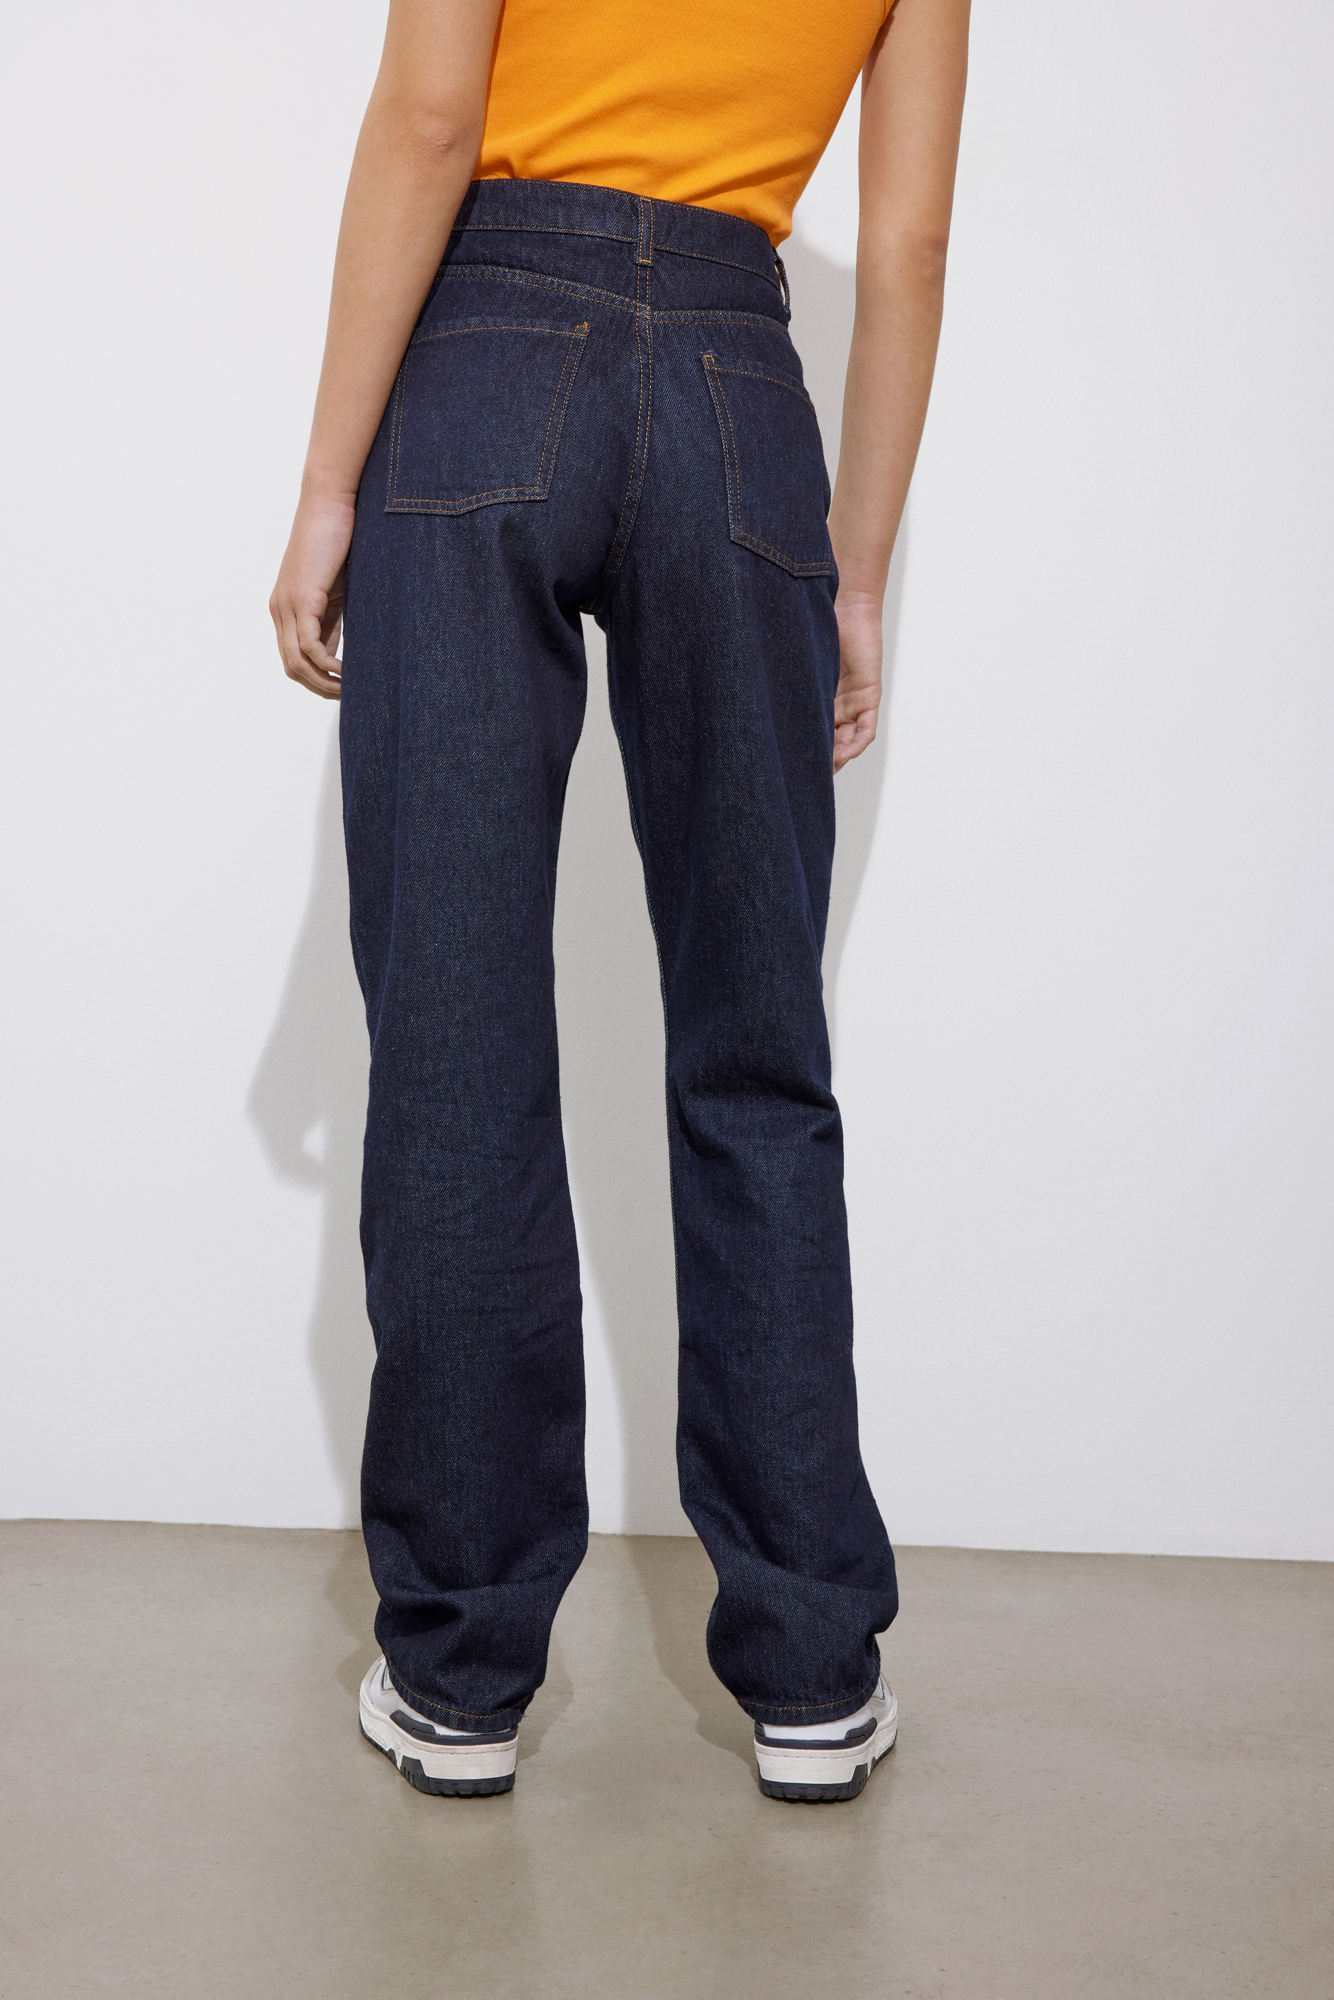 væsentligt Falde sammen Enkelhed Dame | Jeans | Stort udvalg af lækre jeans